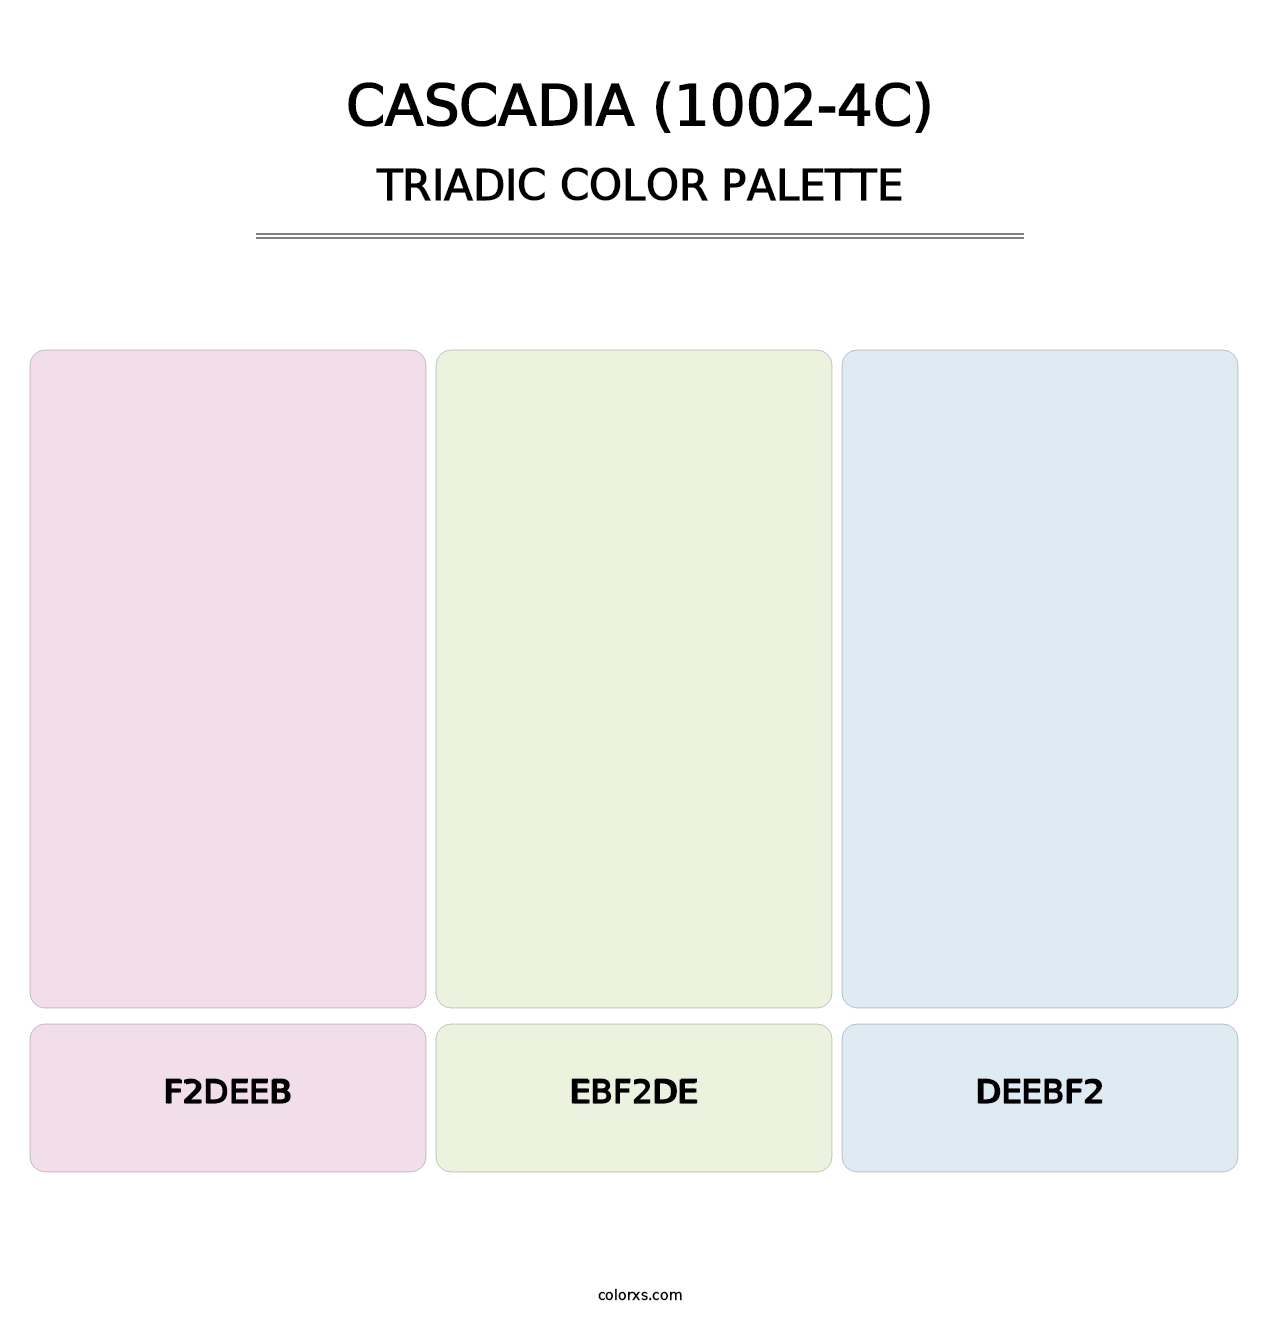 Cascadia (1002-4C) - Triadic Color Palette